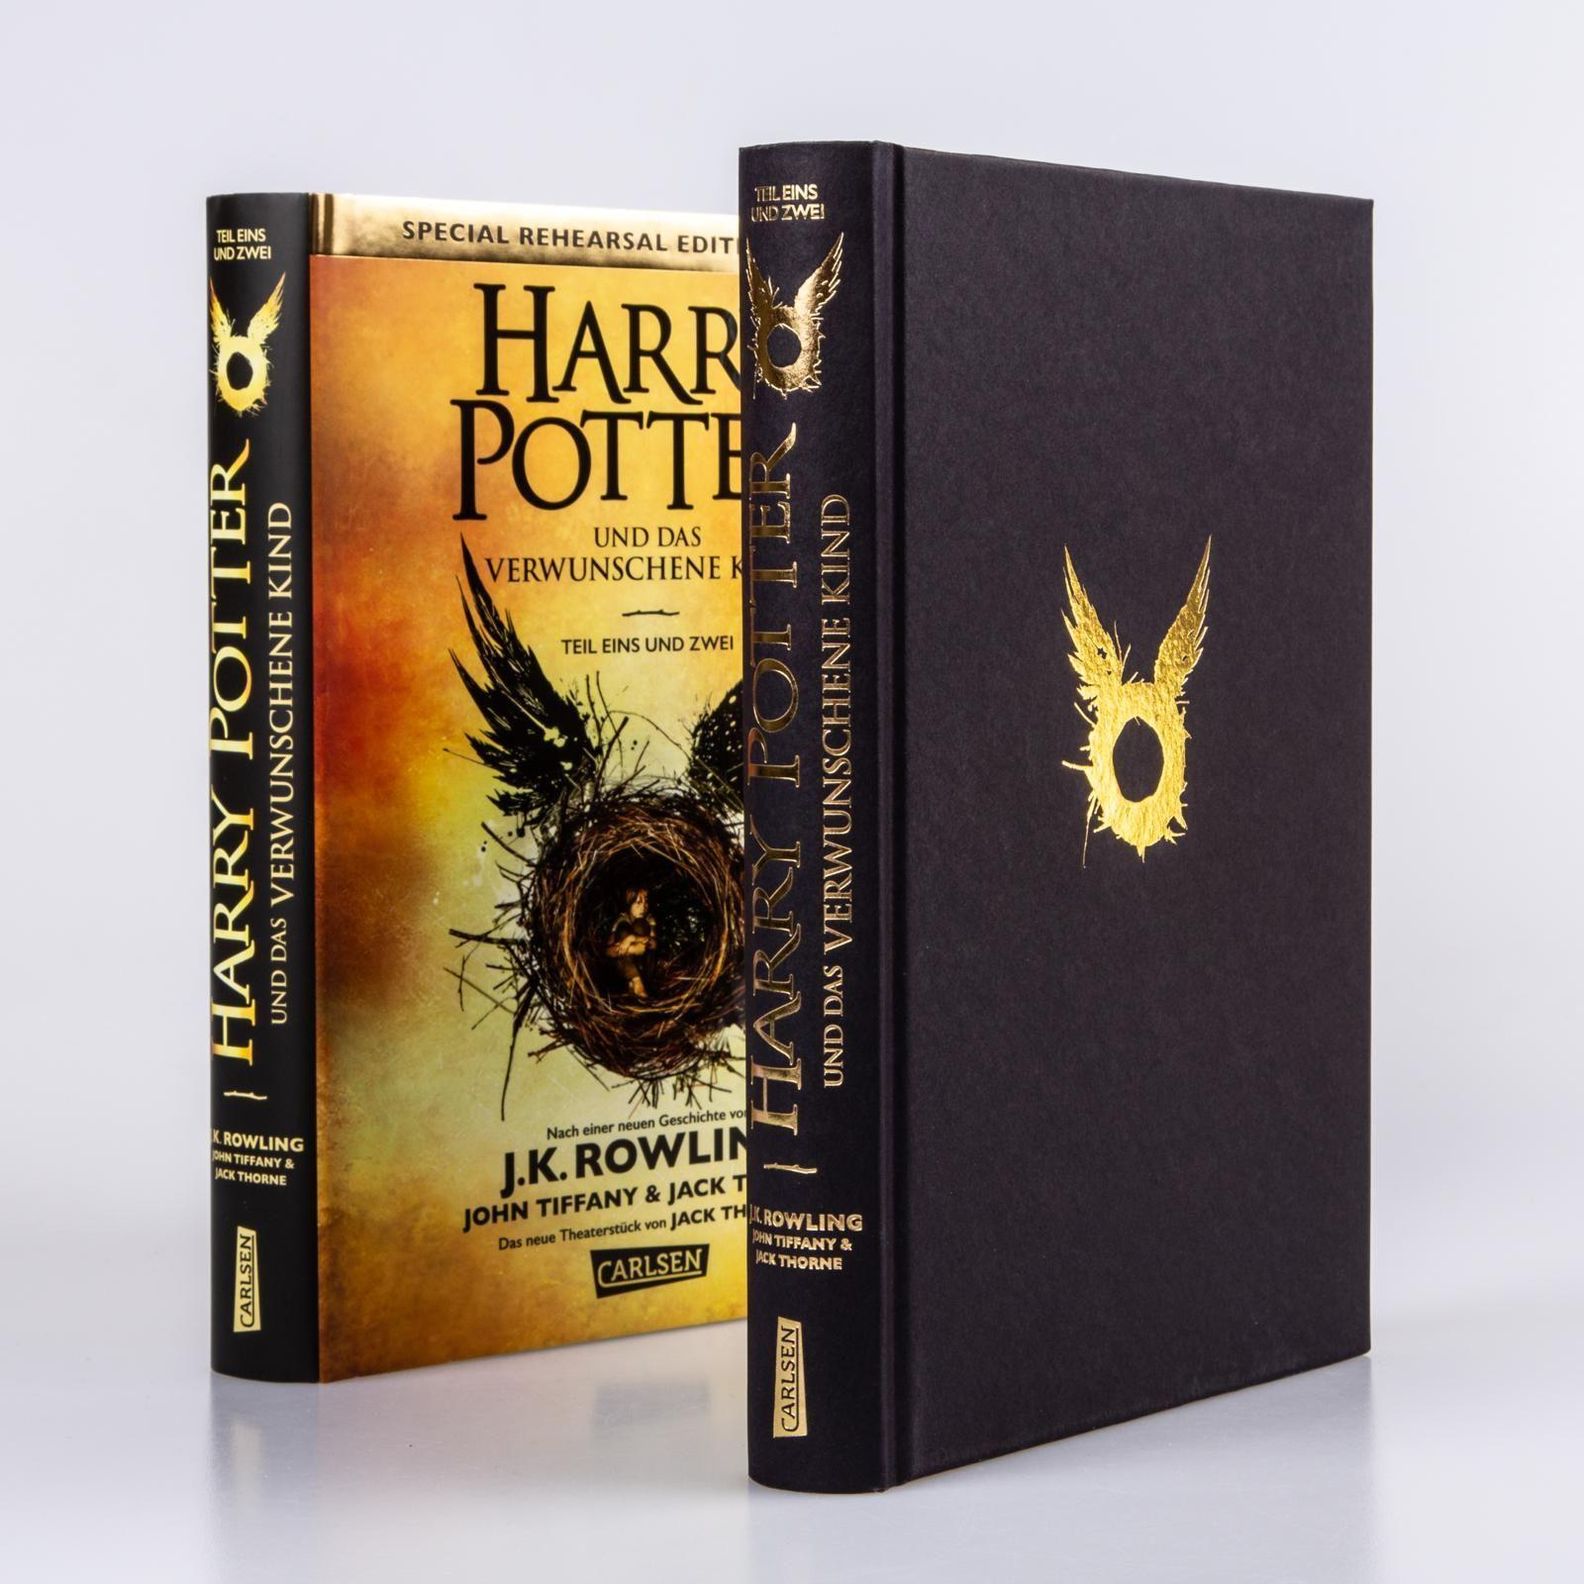 Harry Potter und das verwunschene Kind Buch versandkostenfrei - Weltbild.ch